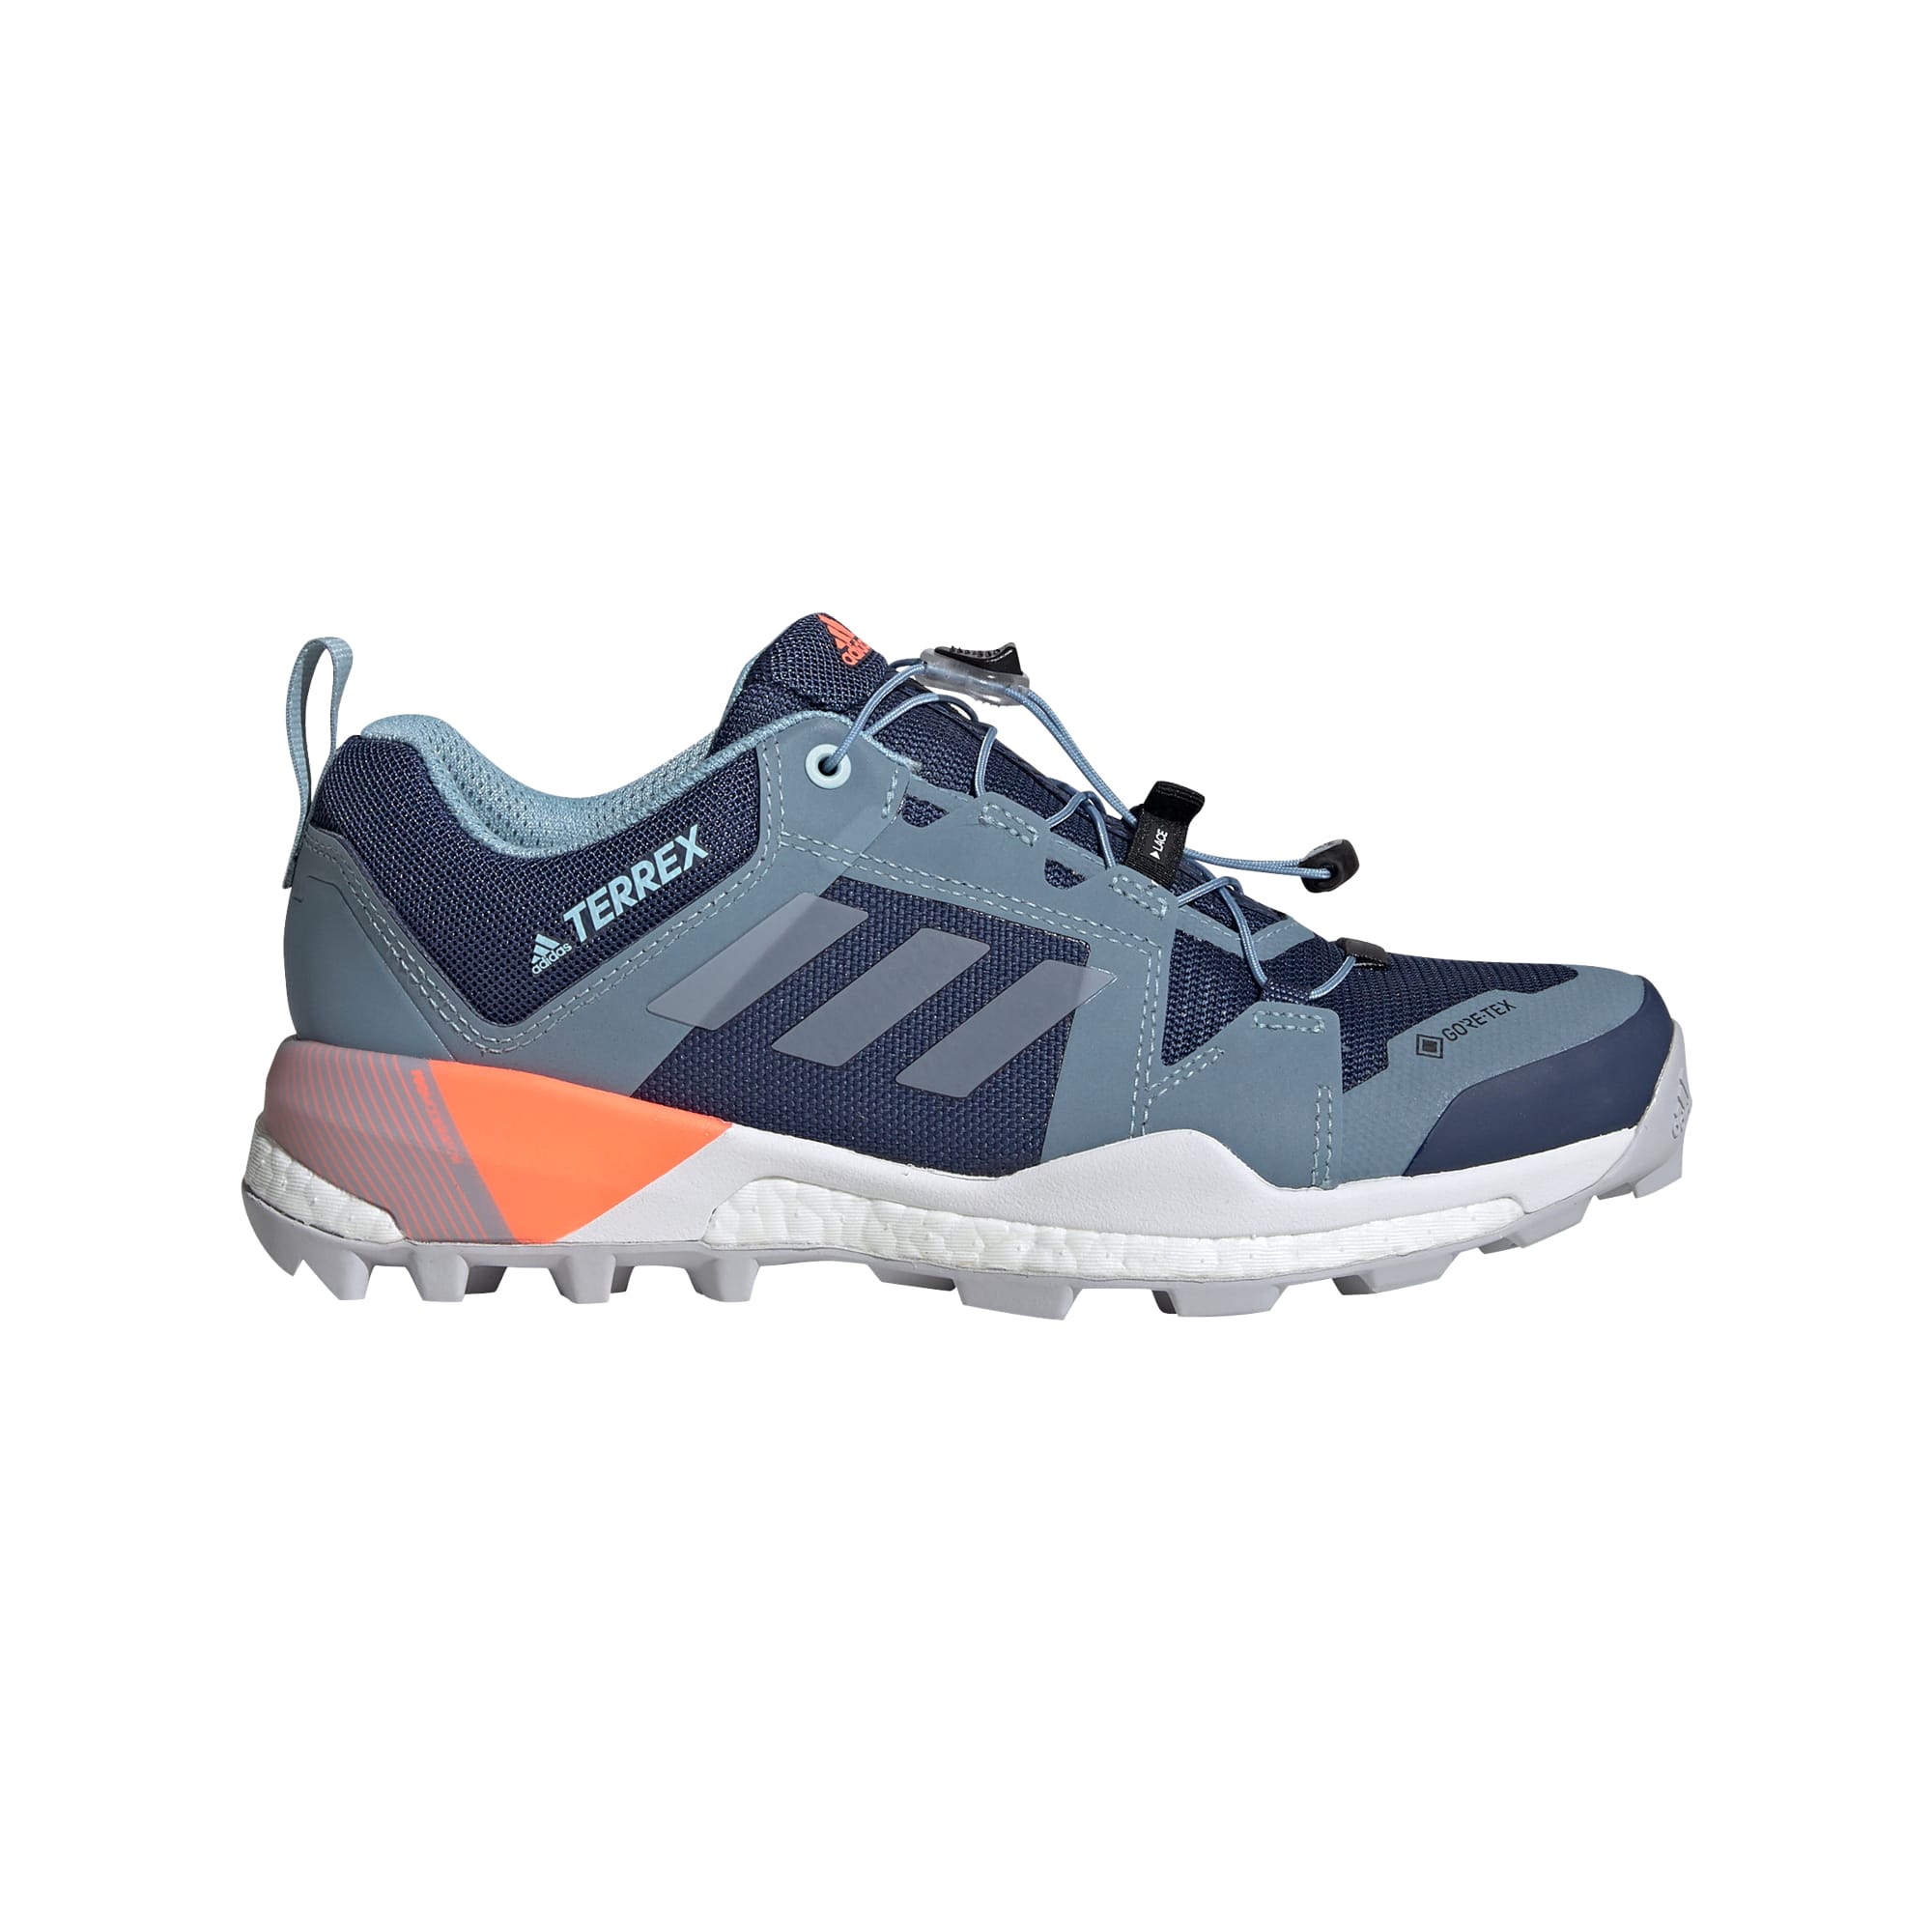 tigger bruger Afstem Køb Adidas Women's Terrex Skychaser XT Gore-Tex Hiking Shoes fra Outnorth